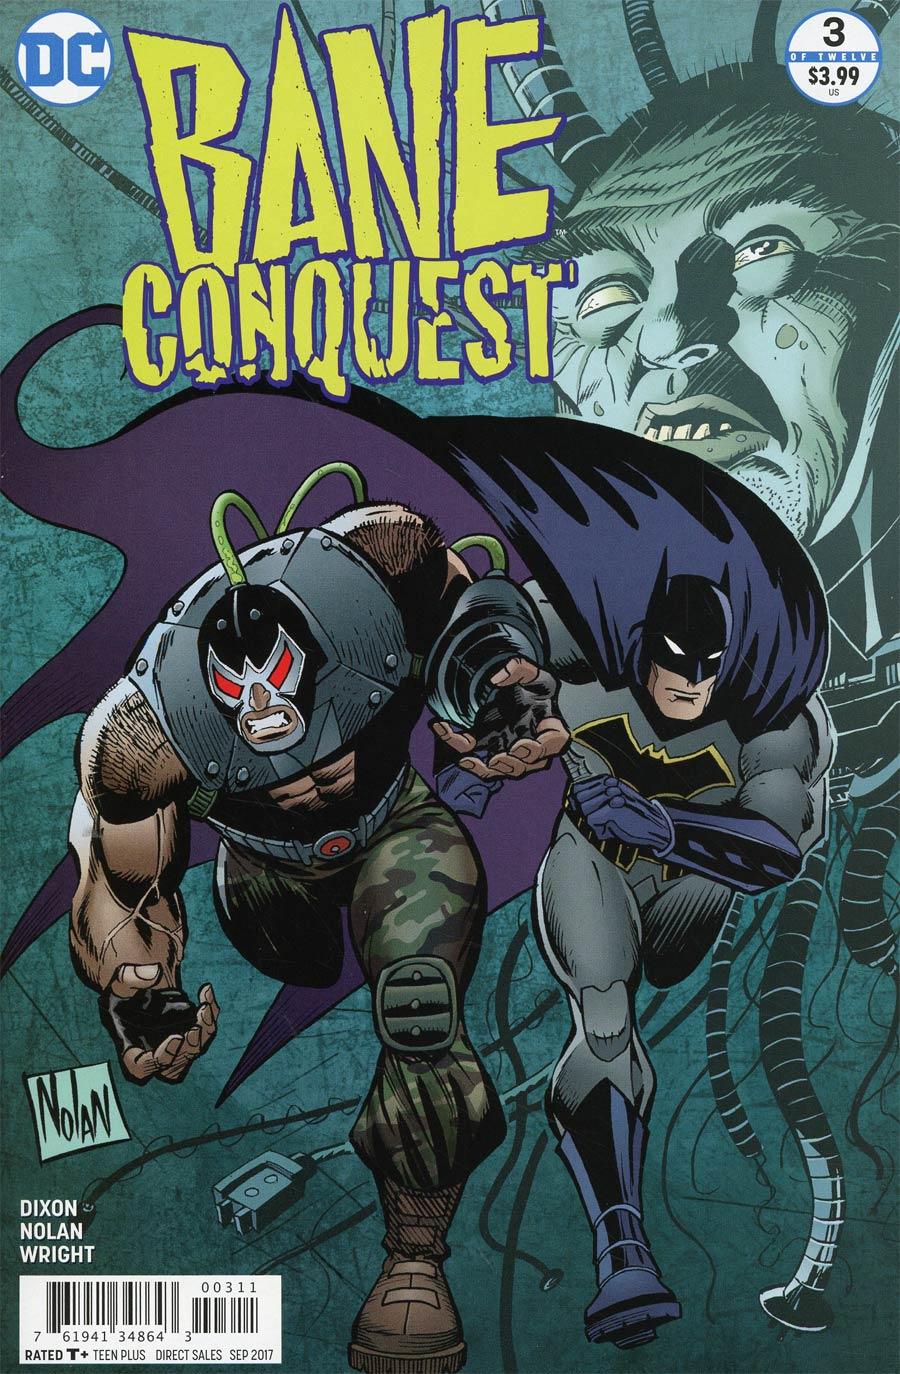 Bane Conquest Vol. 1 #3